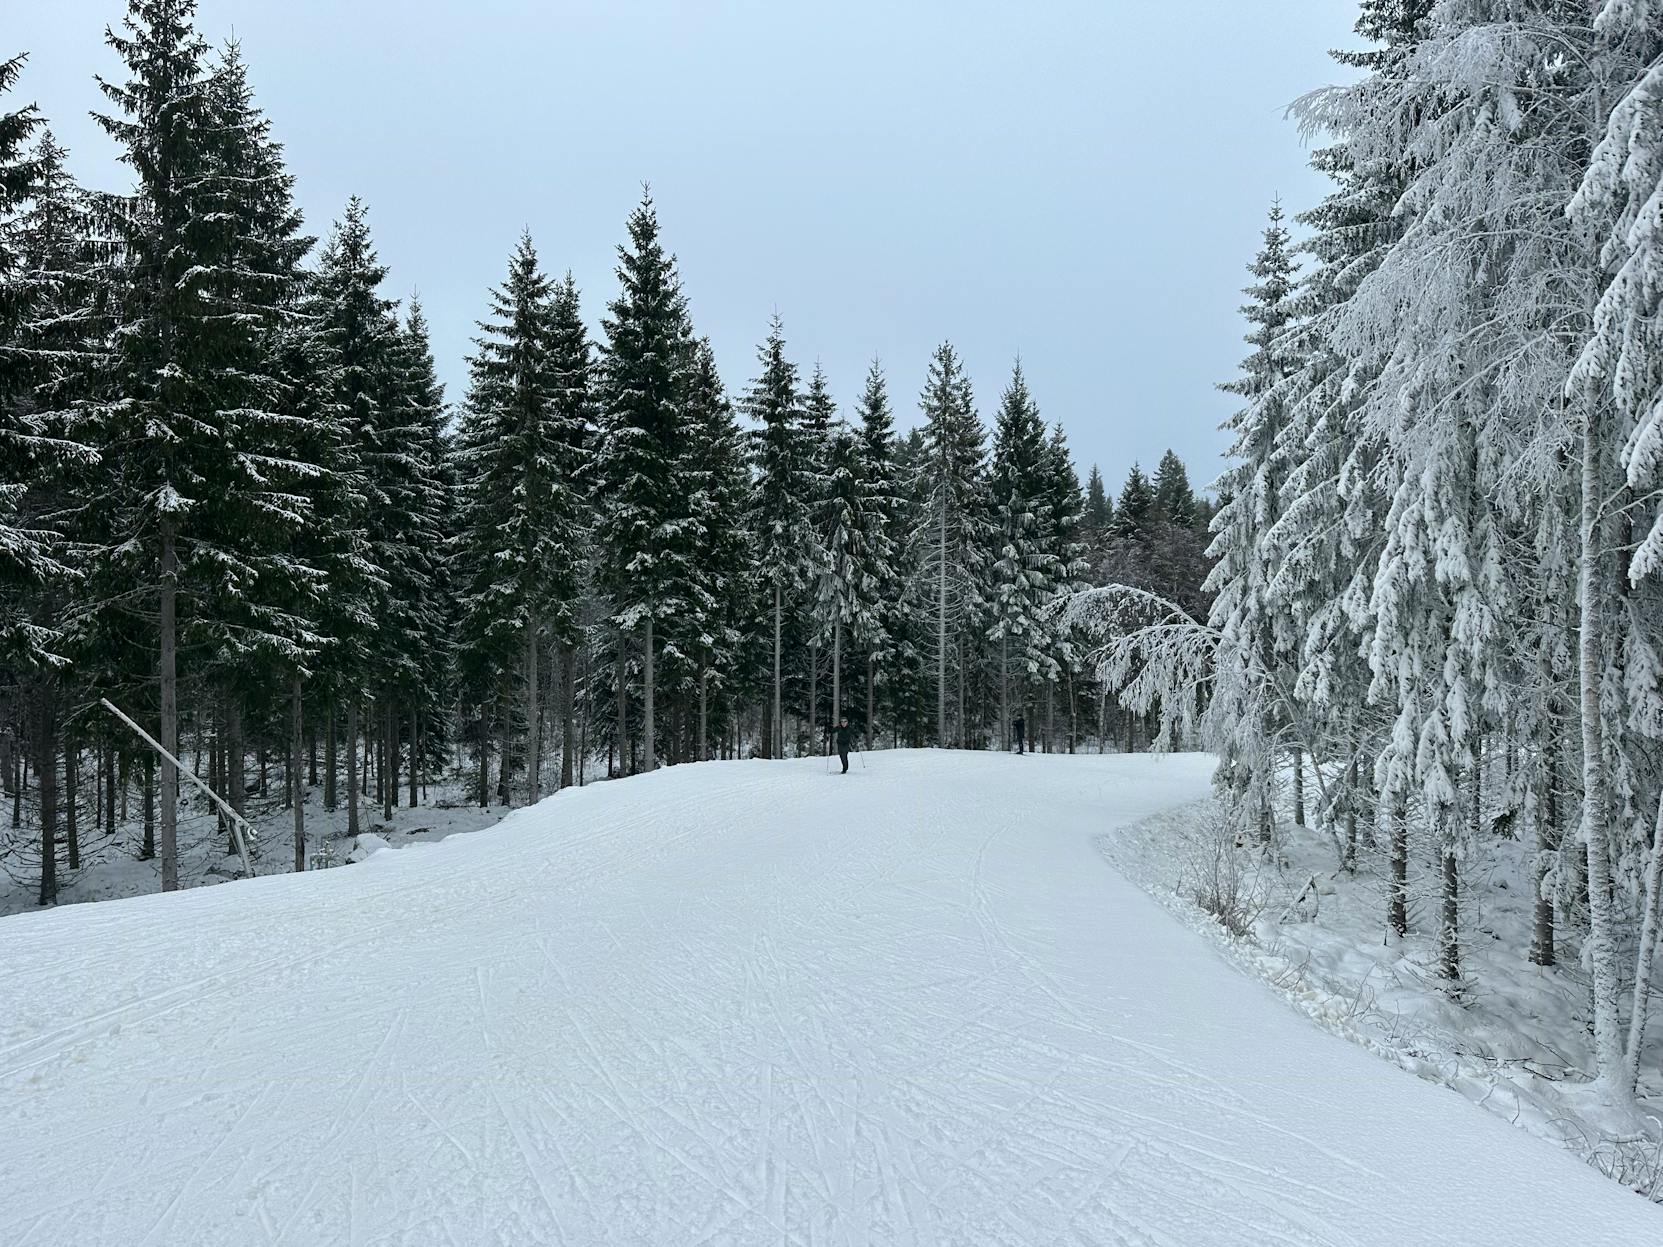 Amalies Geburtstagsausflug – komm mit in den Skiurlaub nach Schweden